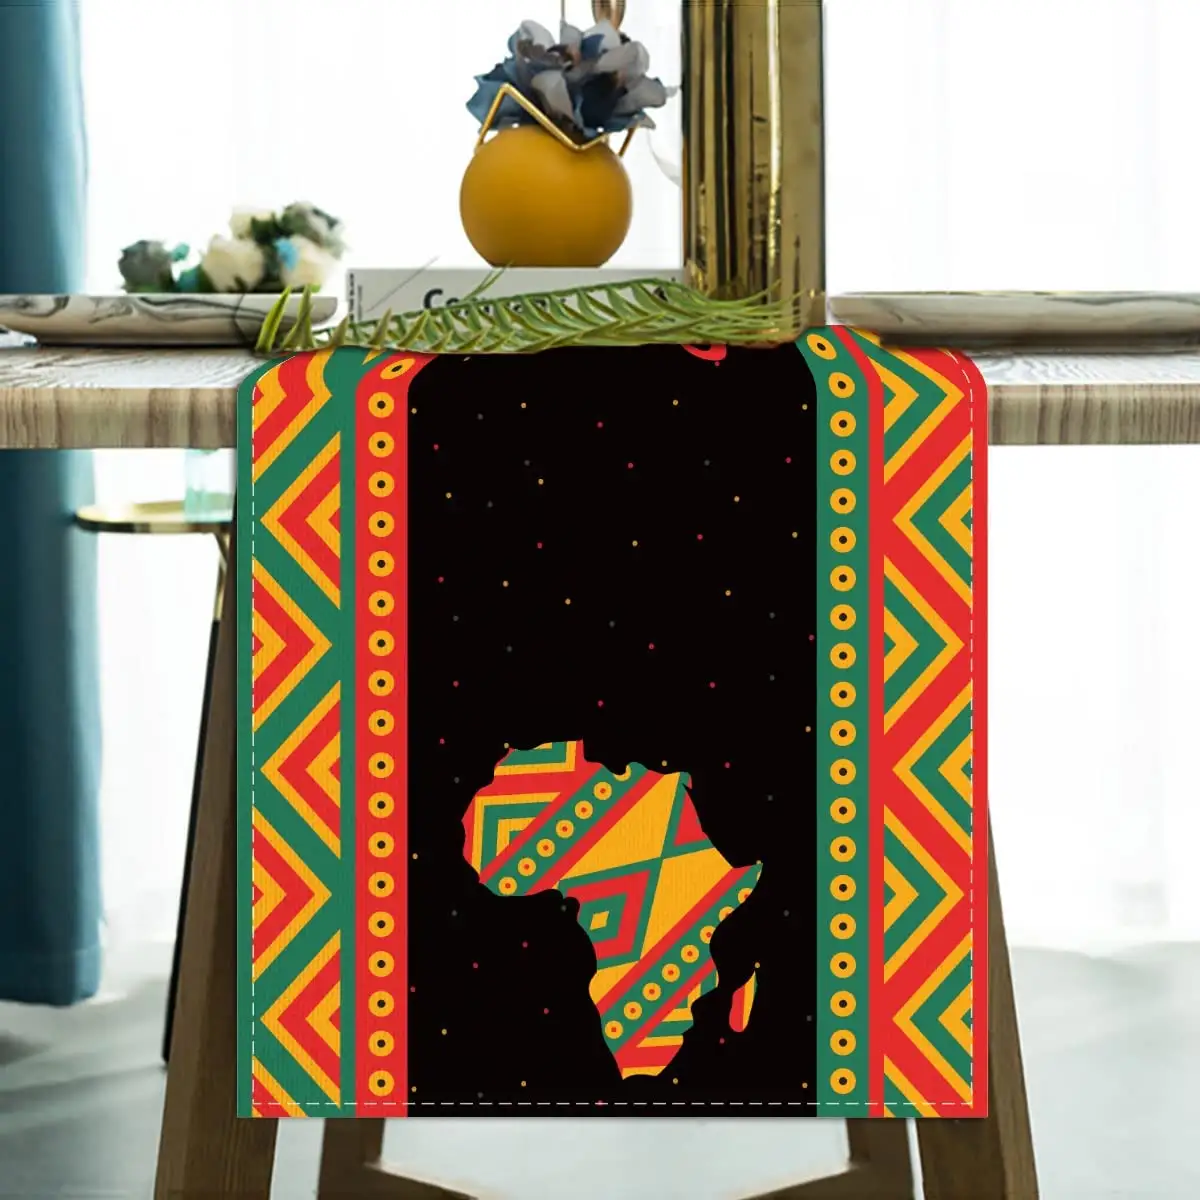 ニクロリネンコットン家庭用6月アフリカ自由の日テーブルクロスポリエステル生地パターン印刷テーブルランナー装飾